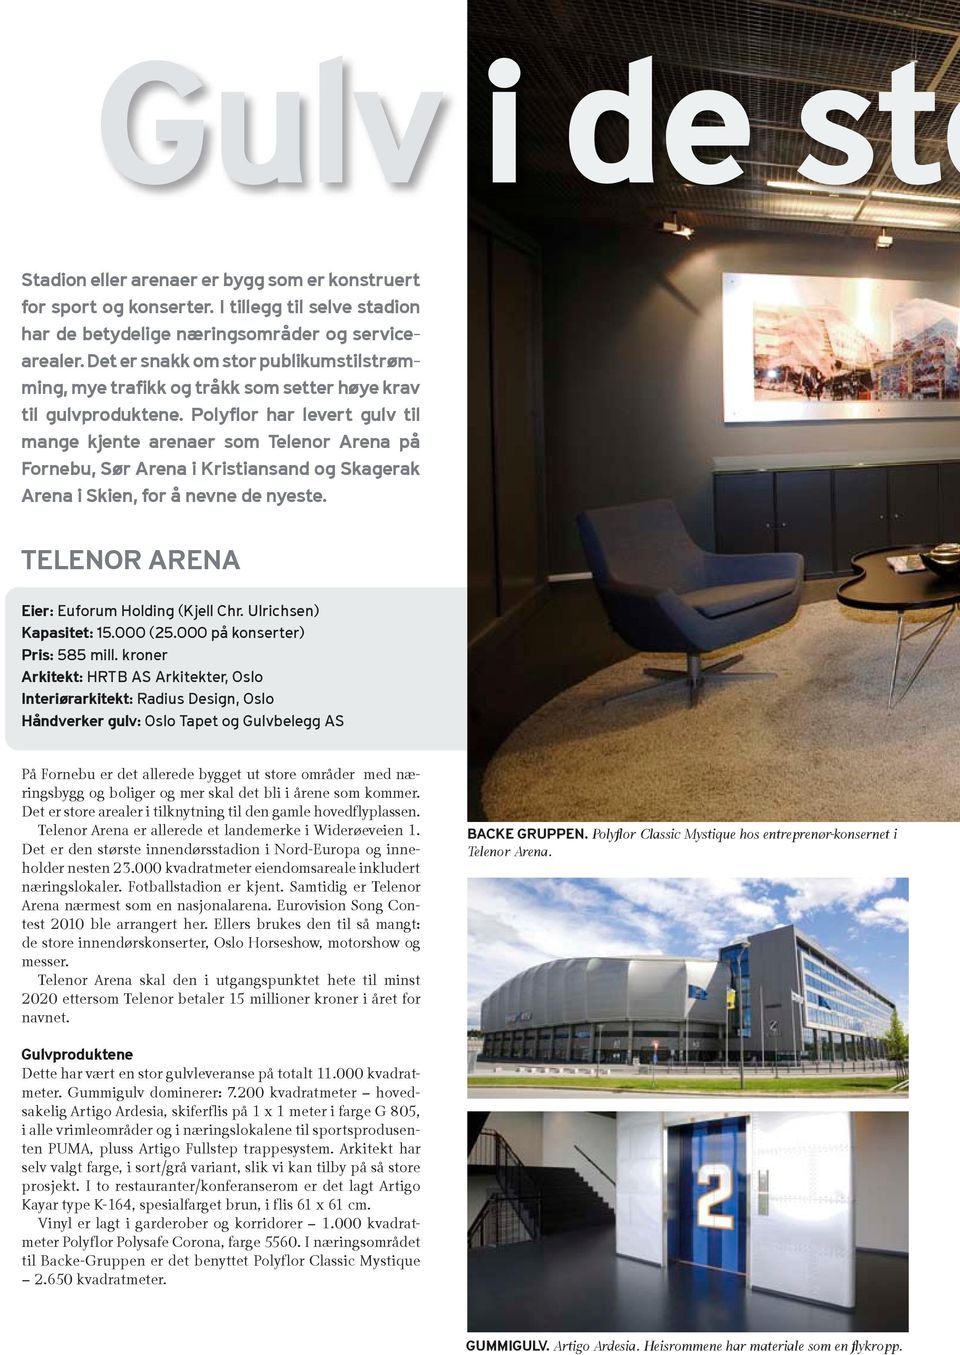 Polyflor har levert gulv til mange kjente arenaer som Telenor Arena på Fornebu, Sør Arena i Kristiansand og Skagerak Arena i Skien, for å nevne de nyeste.